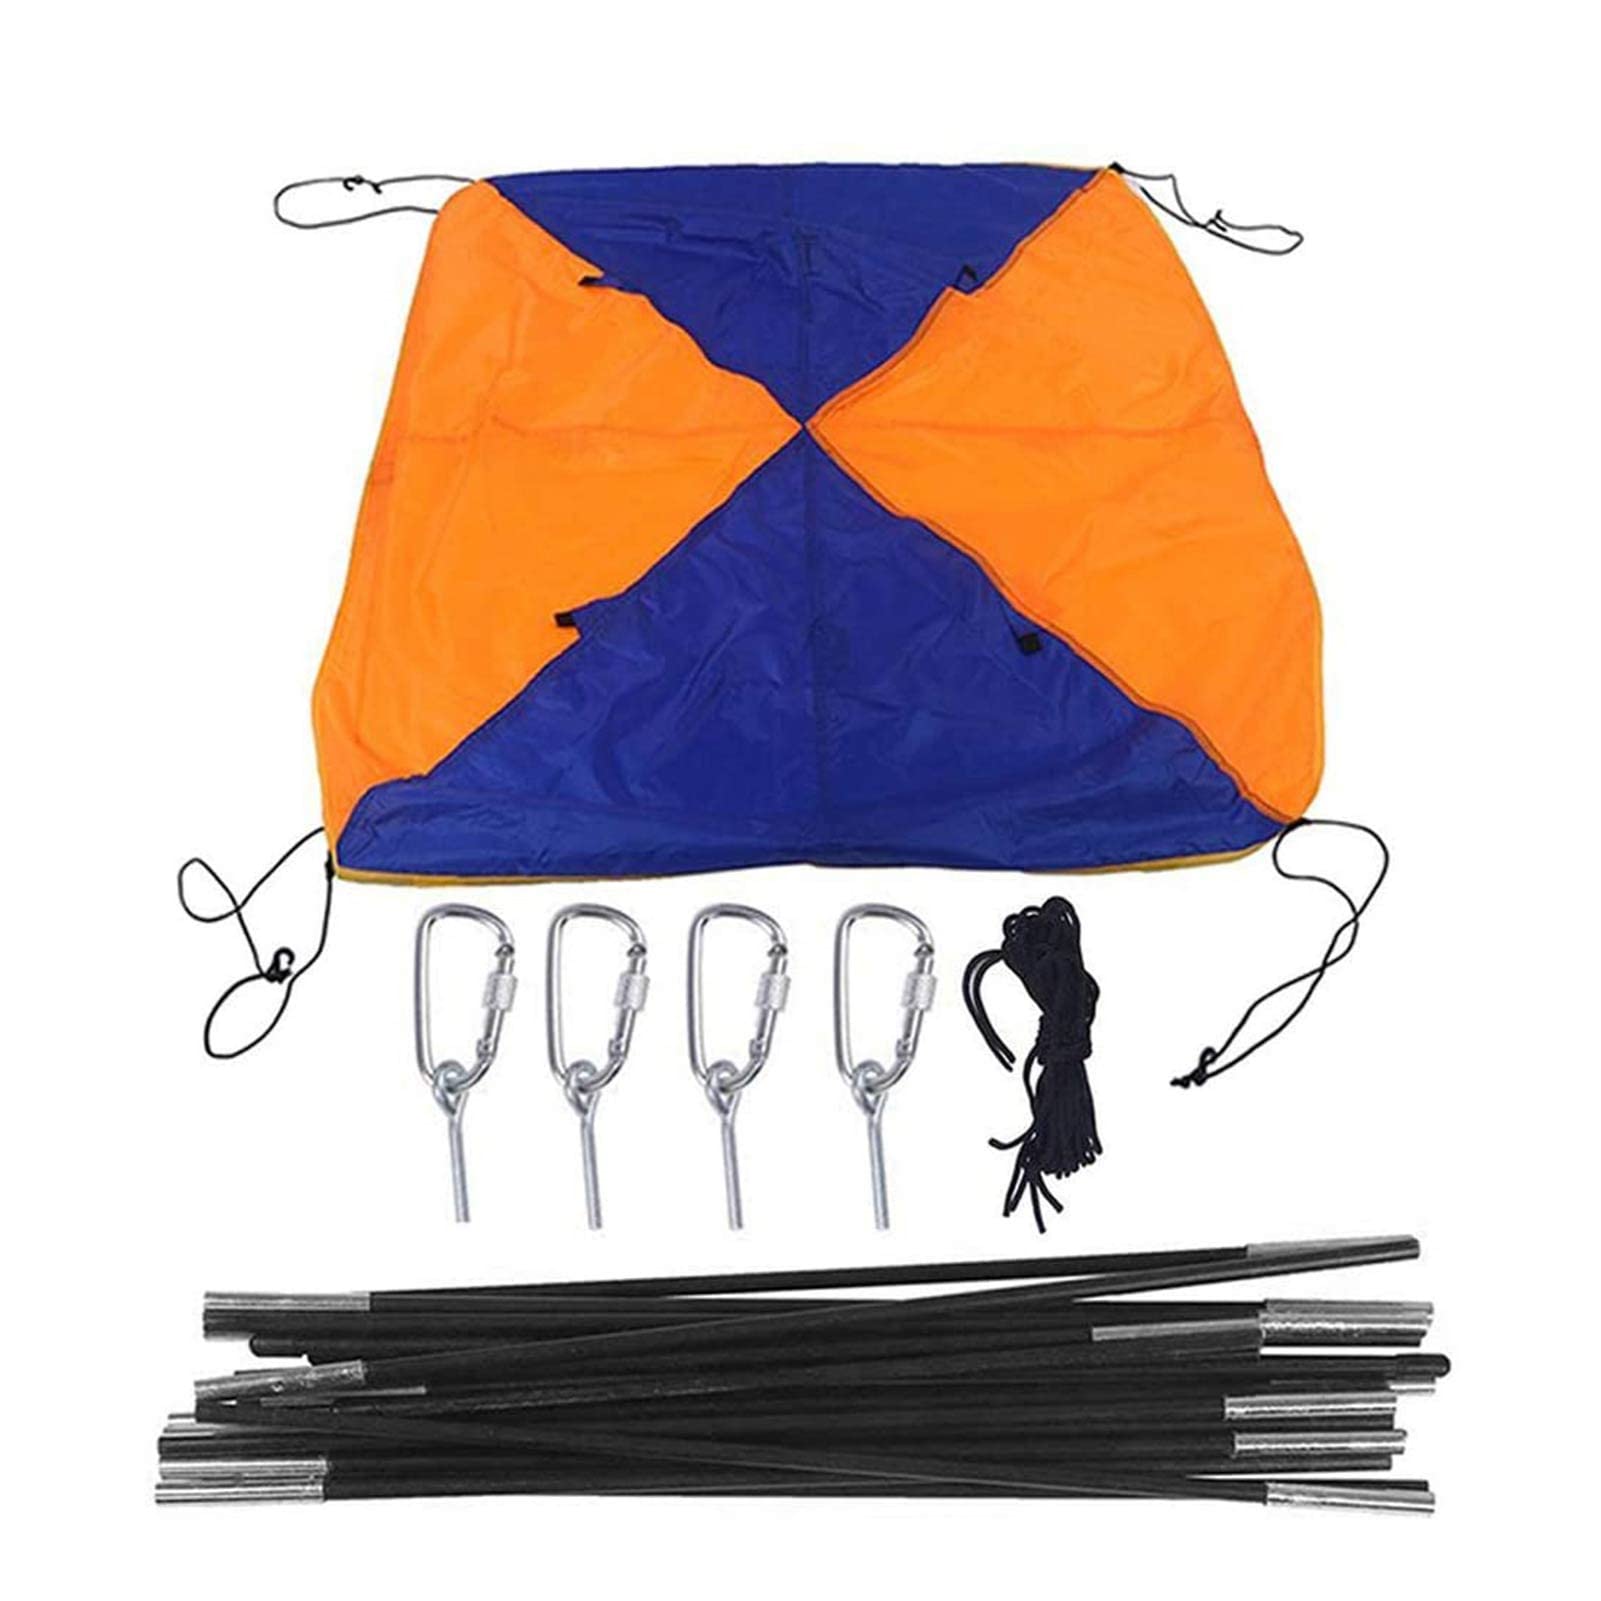 Kanu-Abdeckung - Mehrzweck-Faltzelt aus Gummi - Verfügbar, um Kajak-Kanu-Fischerboote vor Sonne und Regen zu schützen Firulab von Firulab